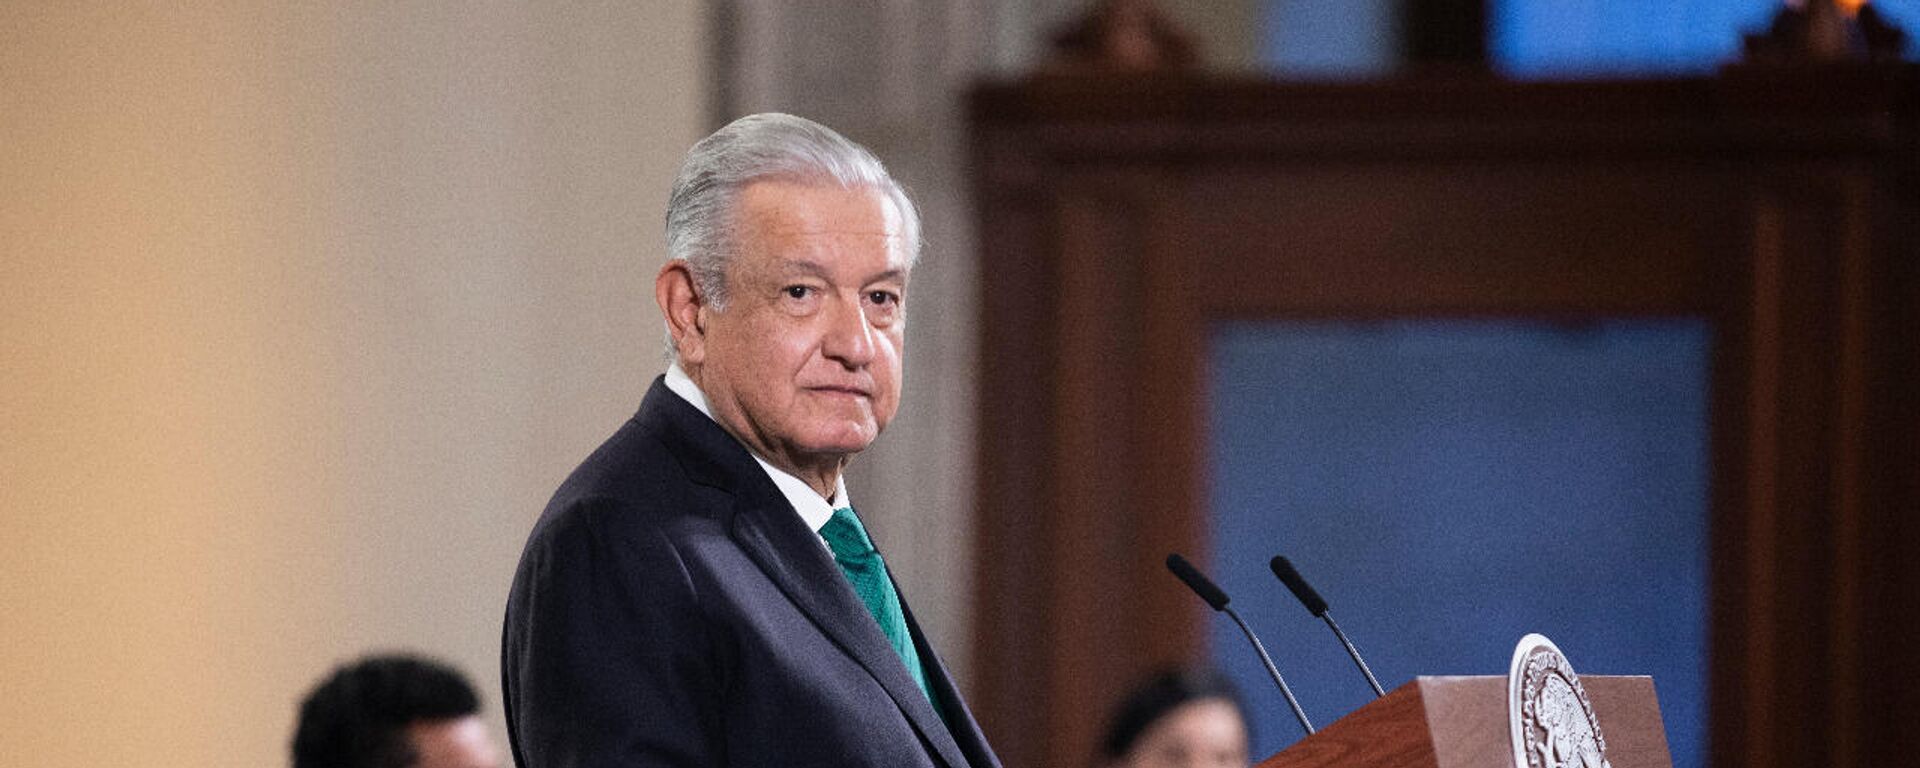 Andrés Manuel López Obrador, presidente de México. - Sputnik Mundo, 1920, 15.11.2021